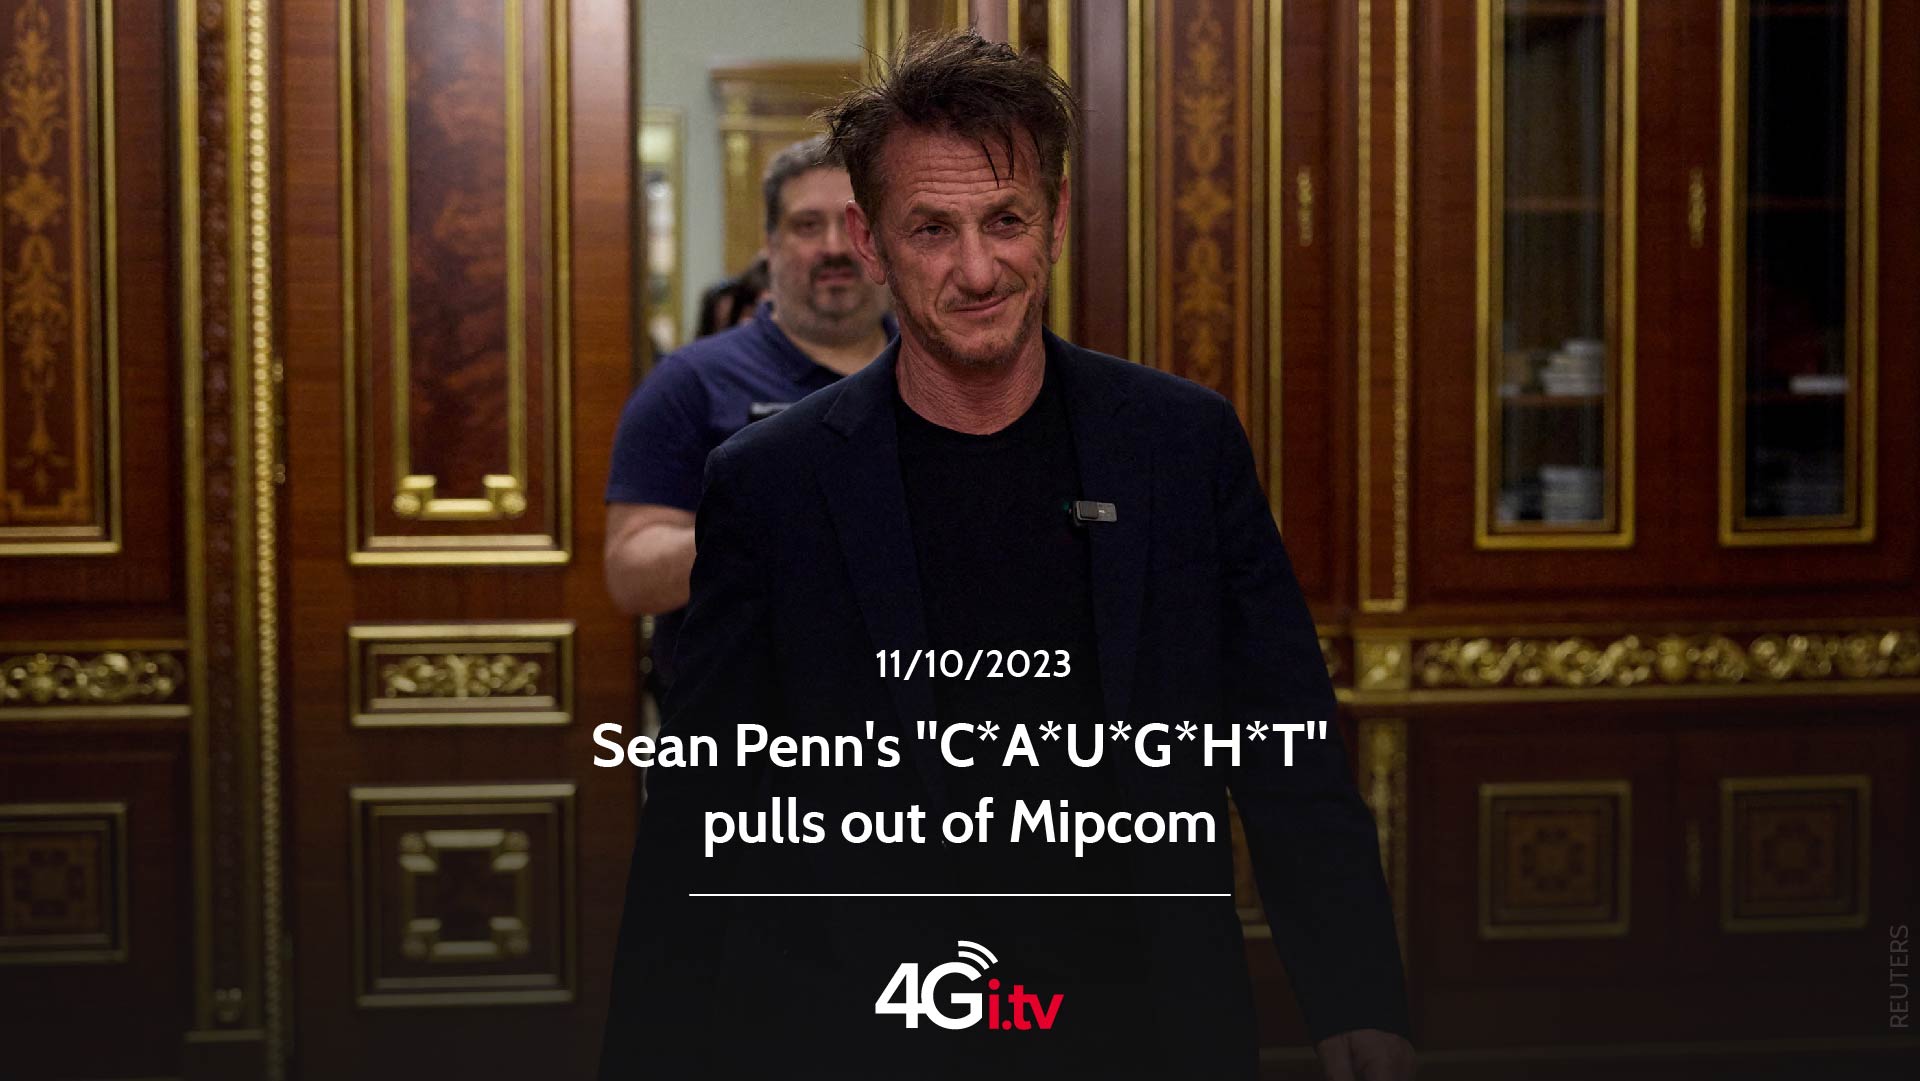 Подробнее о статье Sean Penn’s “C*A*U*G*H*T” pulls out of Mipcom